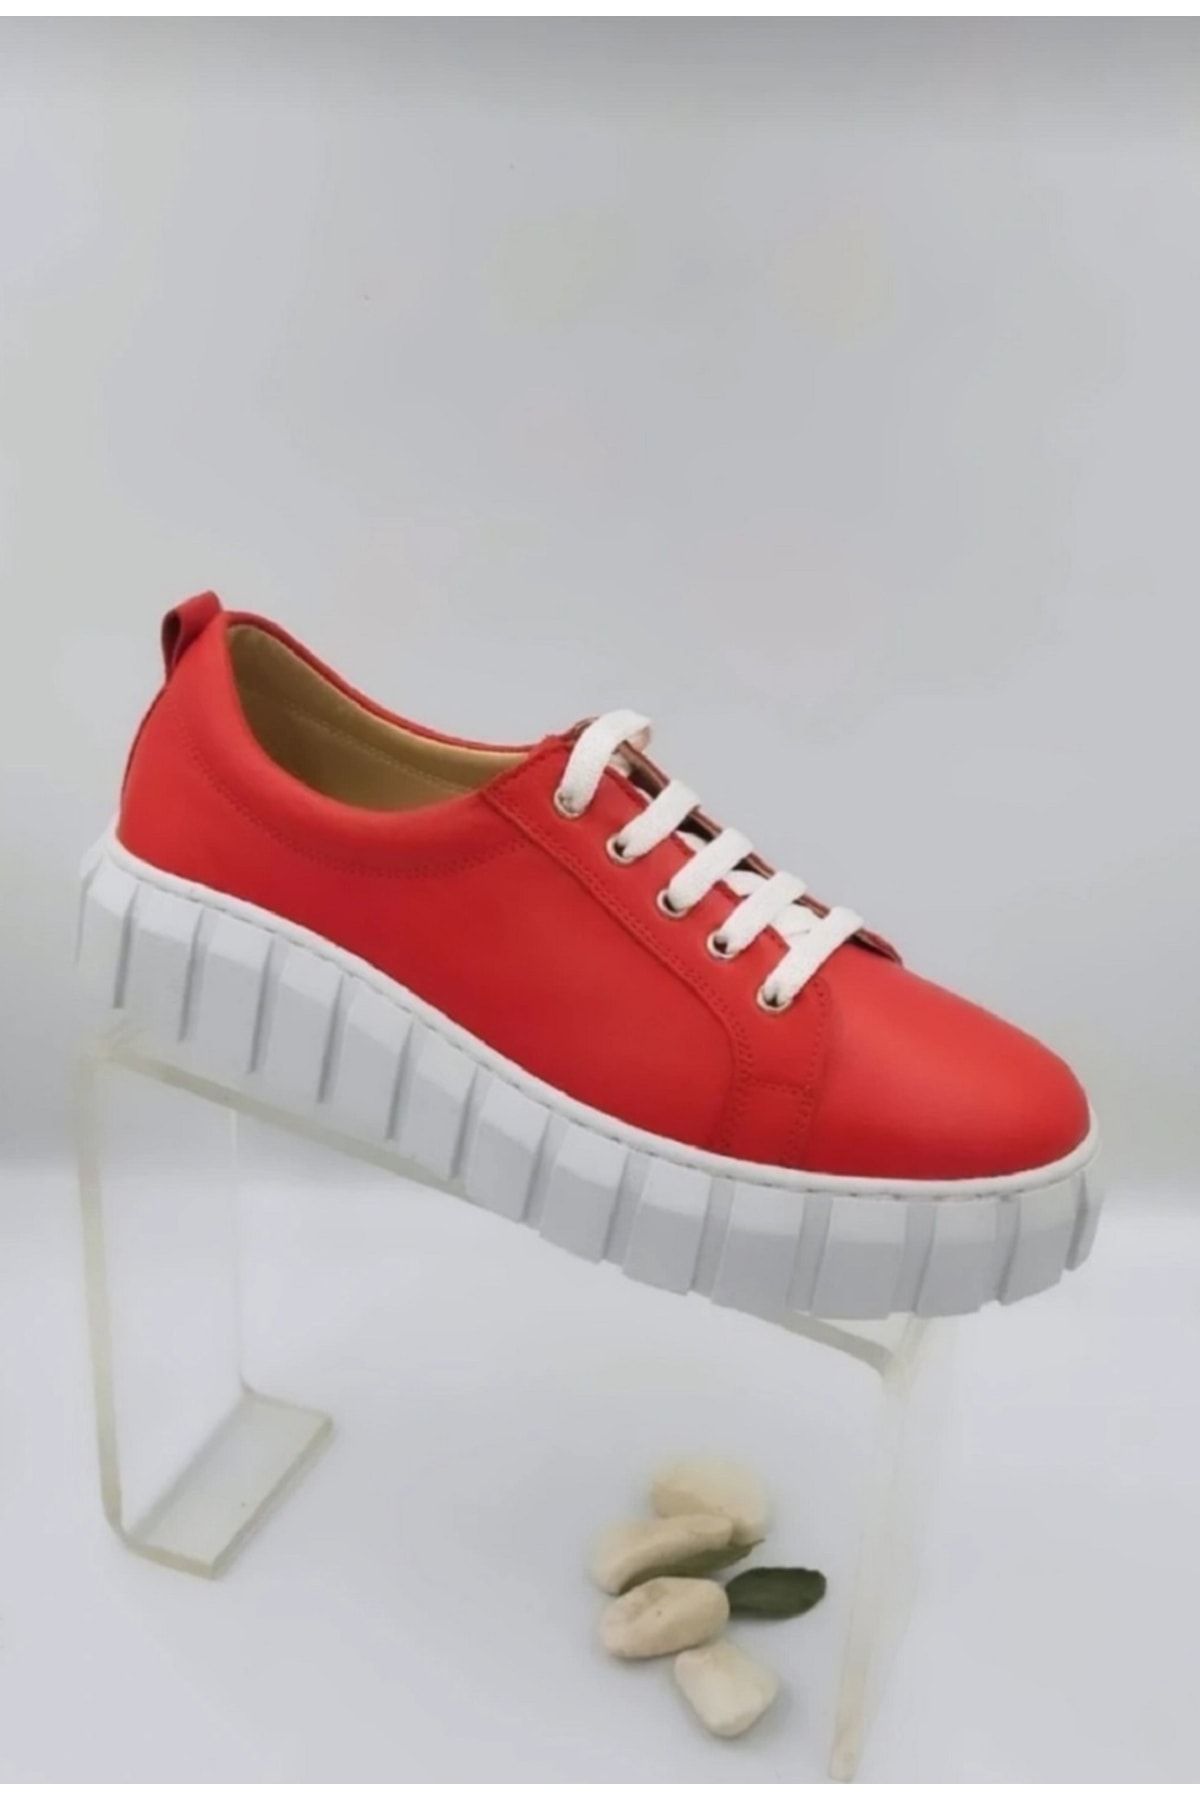 MelAlp Hakiki Deri Kadın Spor Ayakkabı Kırmızı